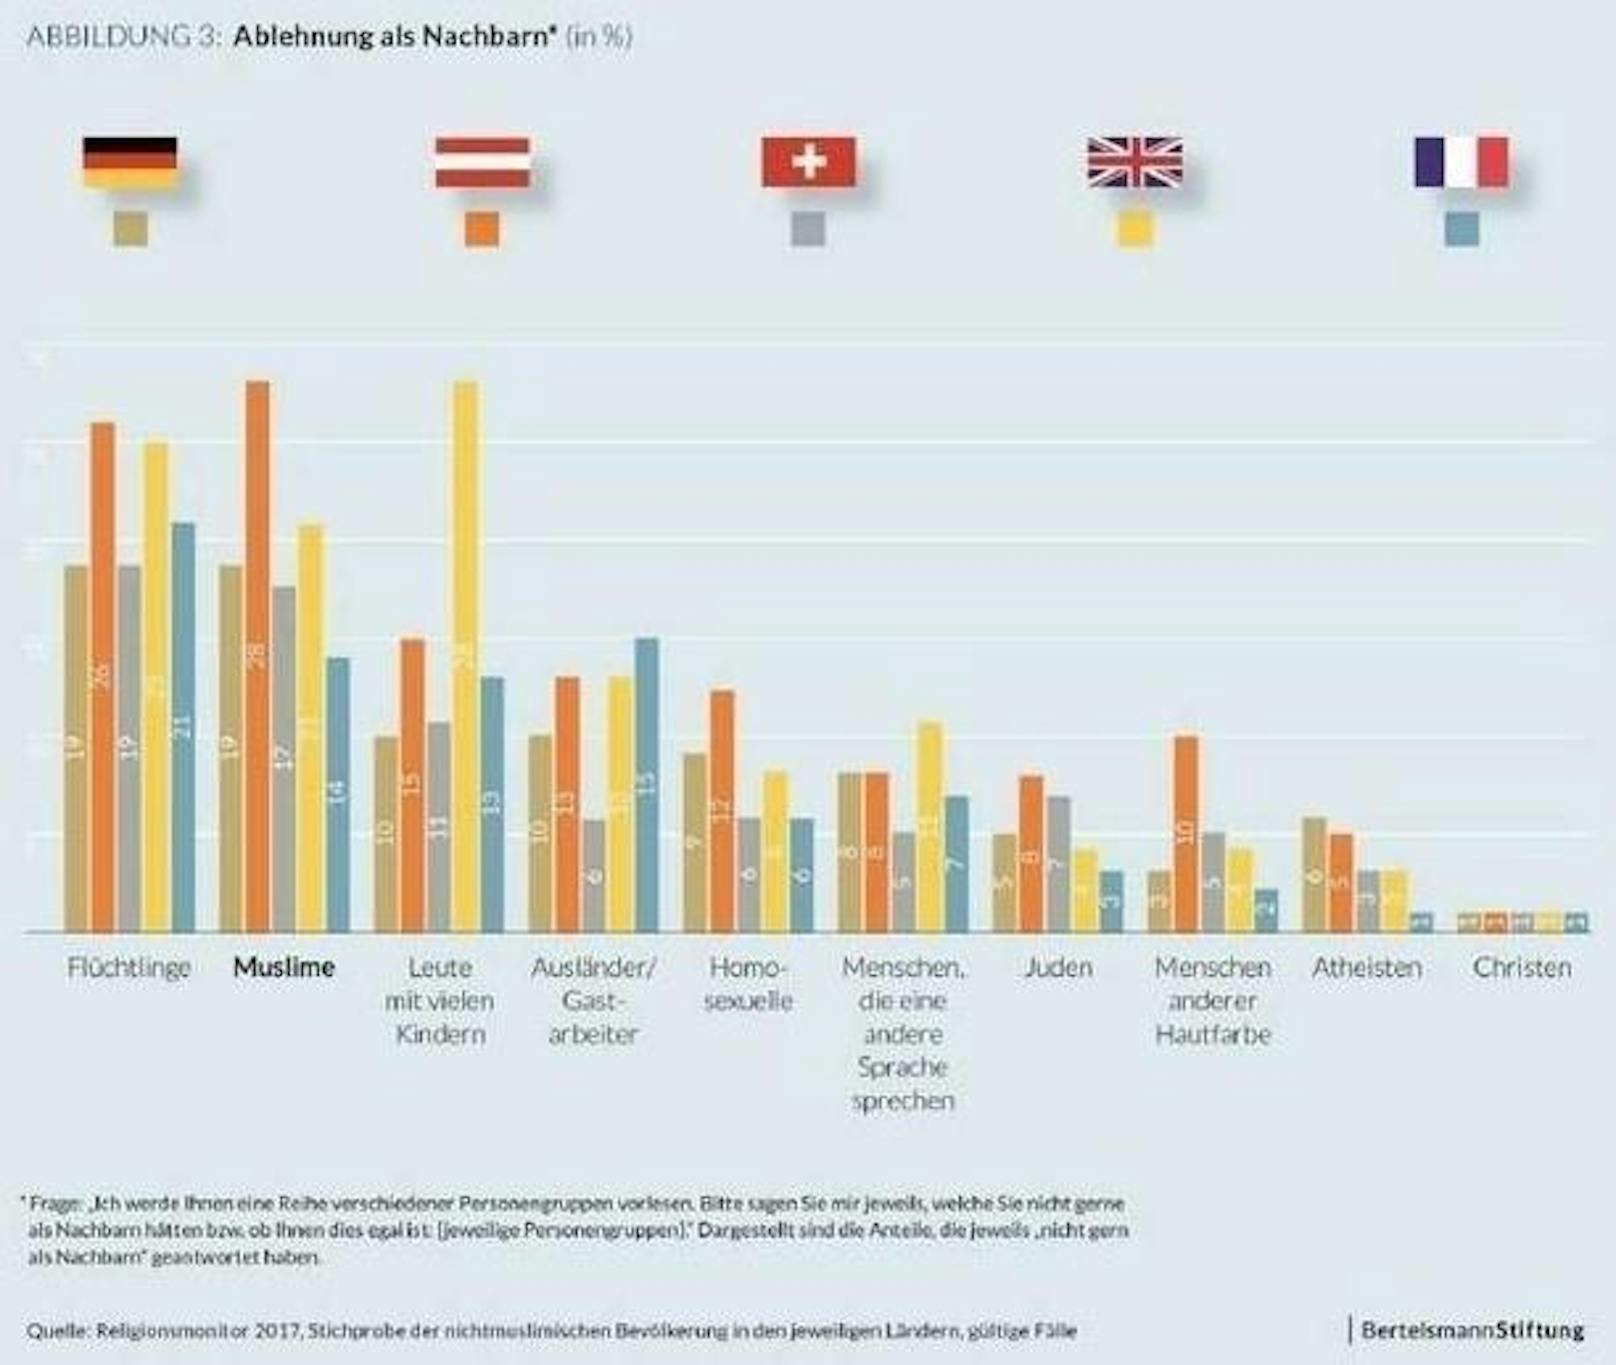 <b>Ablehnung als Nachbar
</b>28 Prozent der Österreicher möchten nicht neben Muslimen wohnen. Das ist ein absoluter Spitzenwert. Auch neben Homosexuellen, Juden und Menschen mit anderer Hautfarbe möchten Österreicher im 5-Länder-Vergleich am wenigsten gerne wohnen.